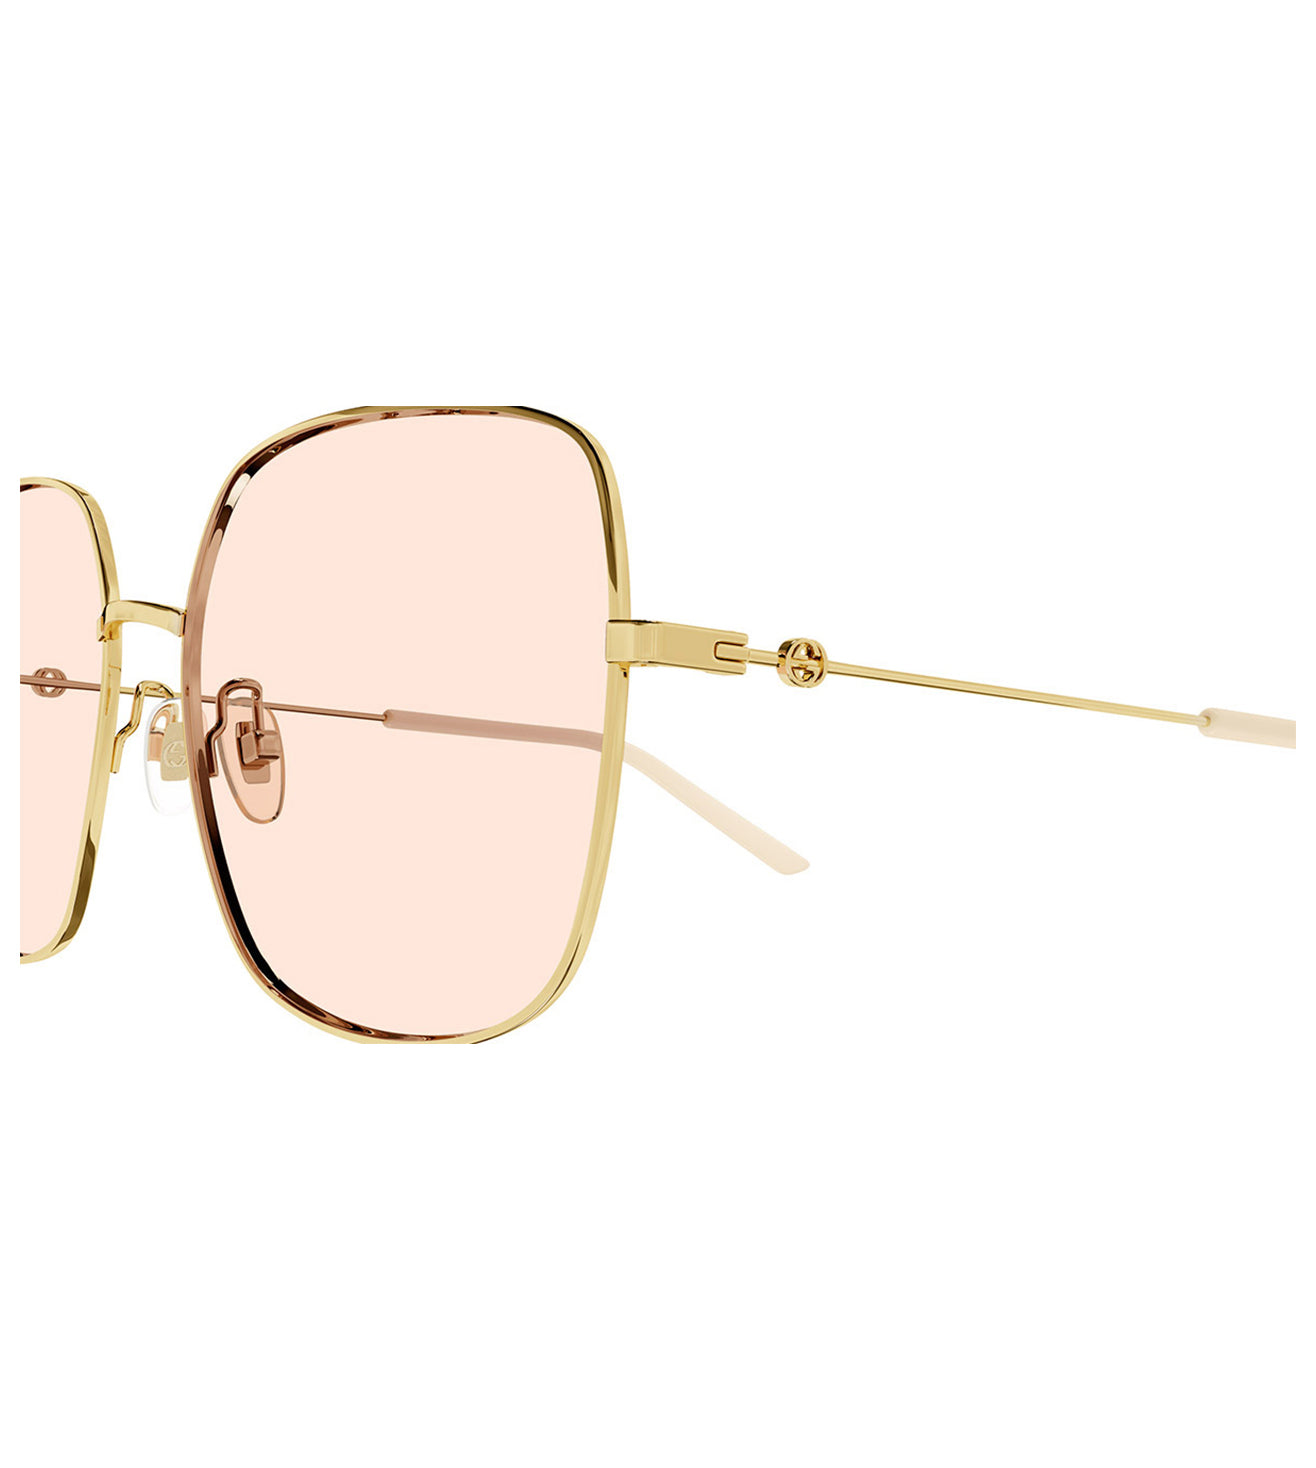 Gucci Women's Pink Square Sunglasses